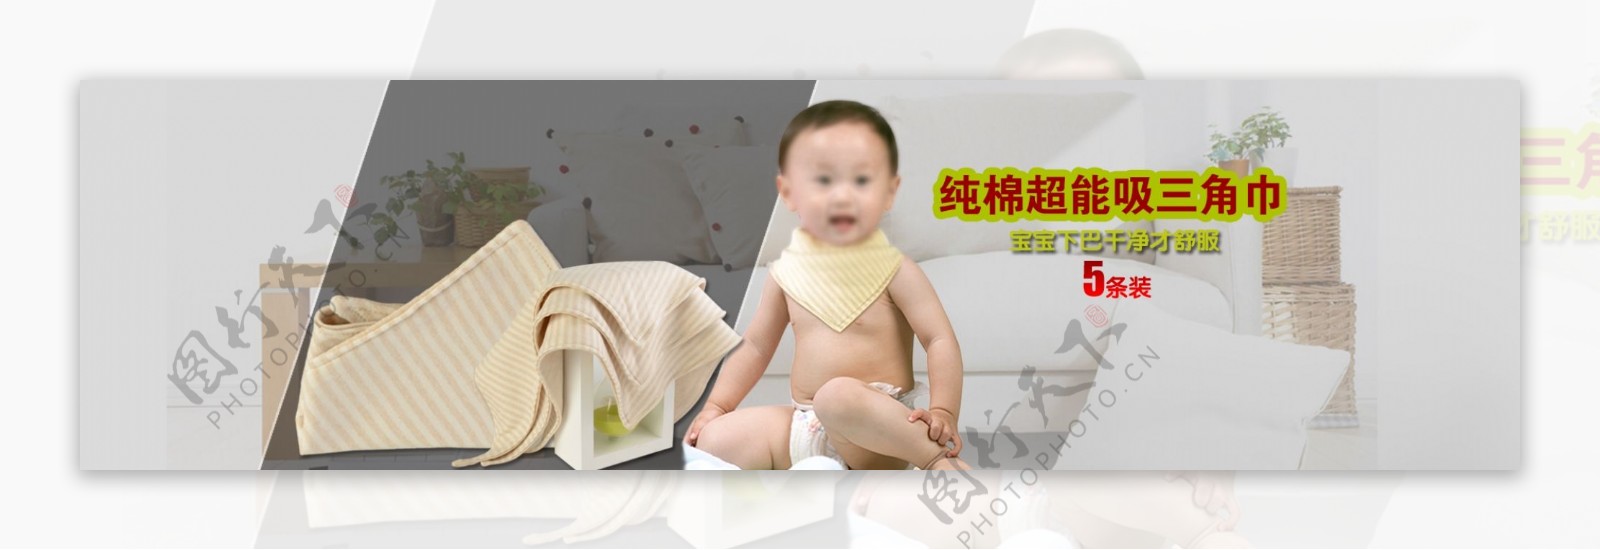 首页母婴海报口水巾小孩用品斑纹